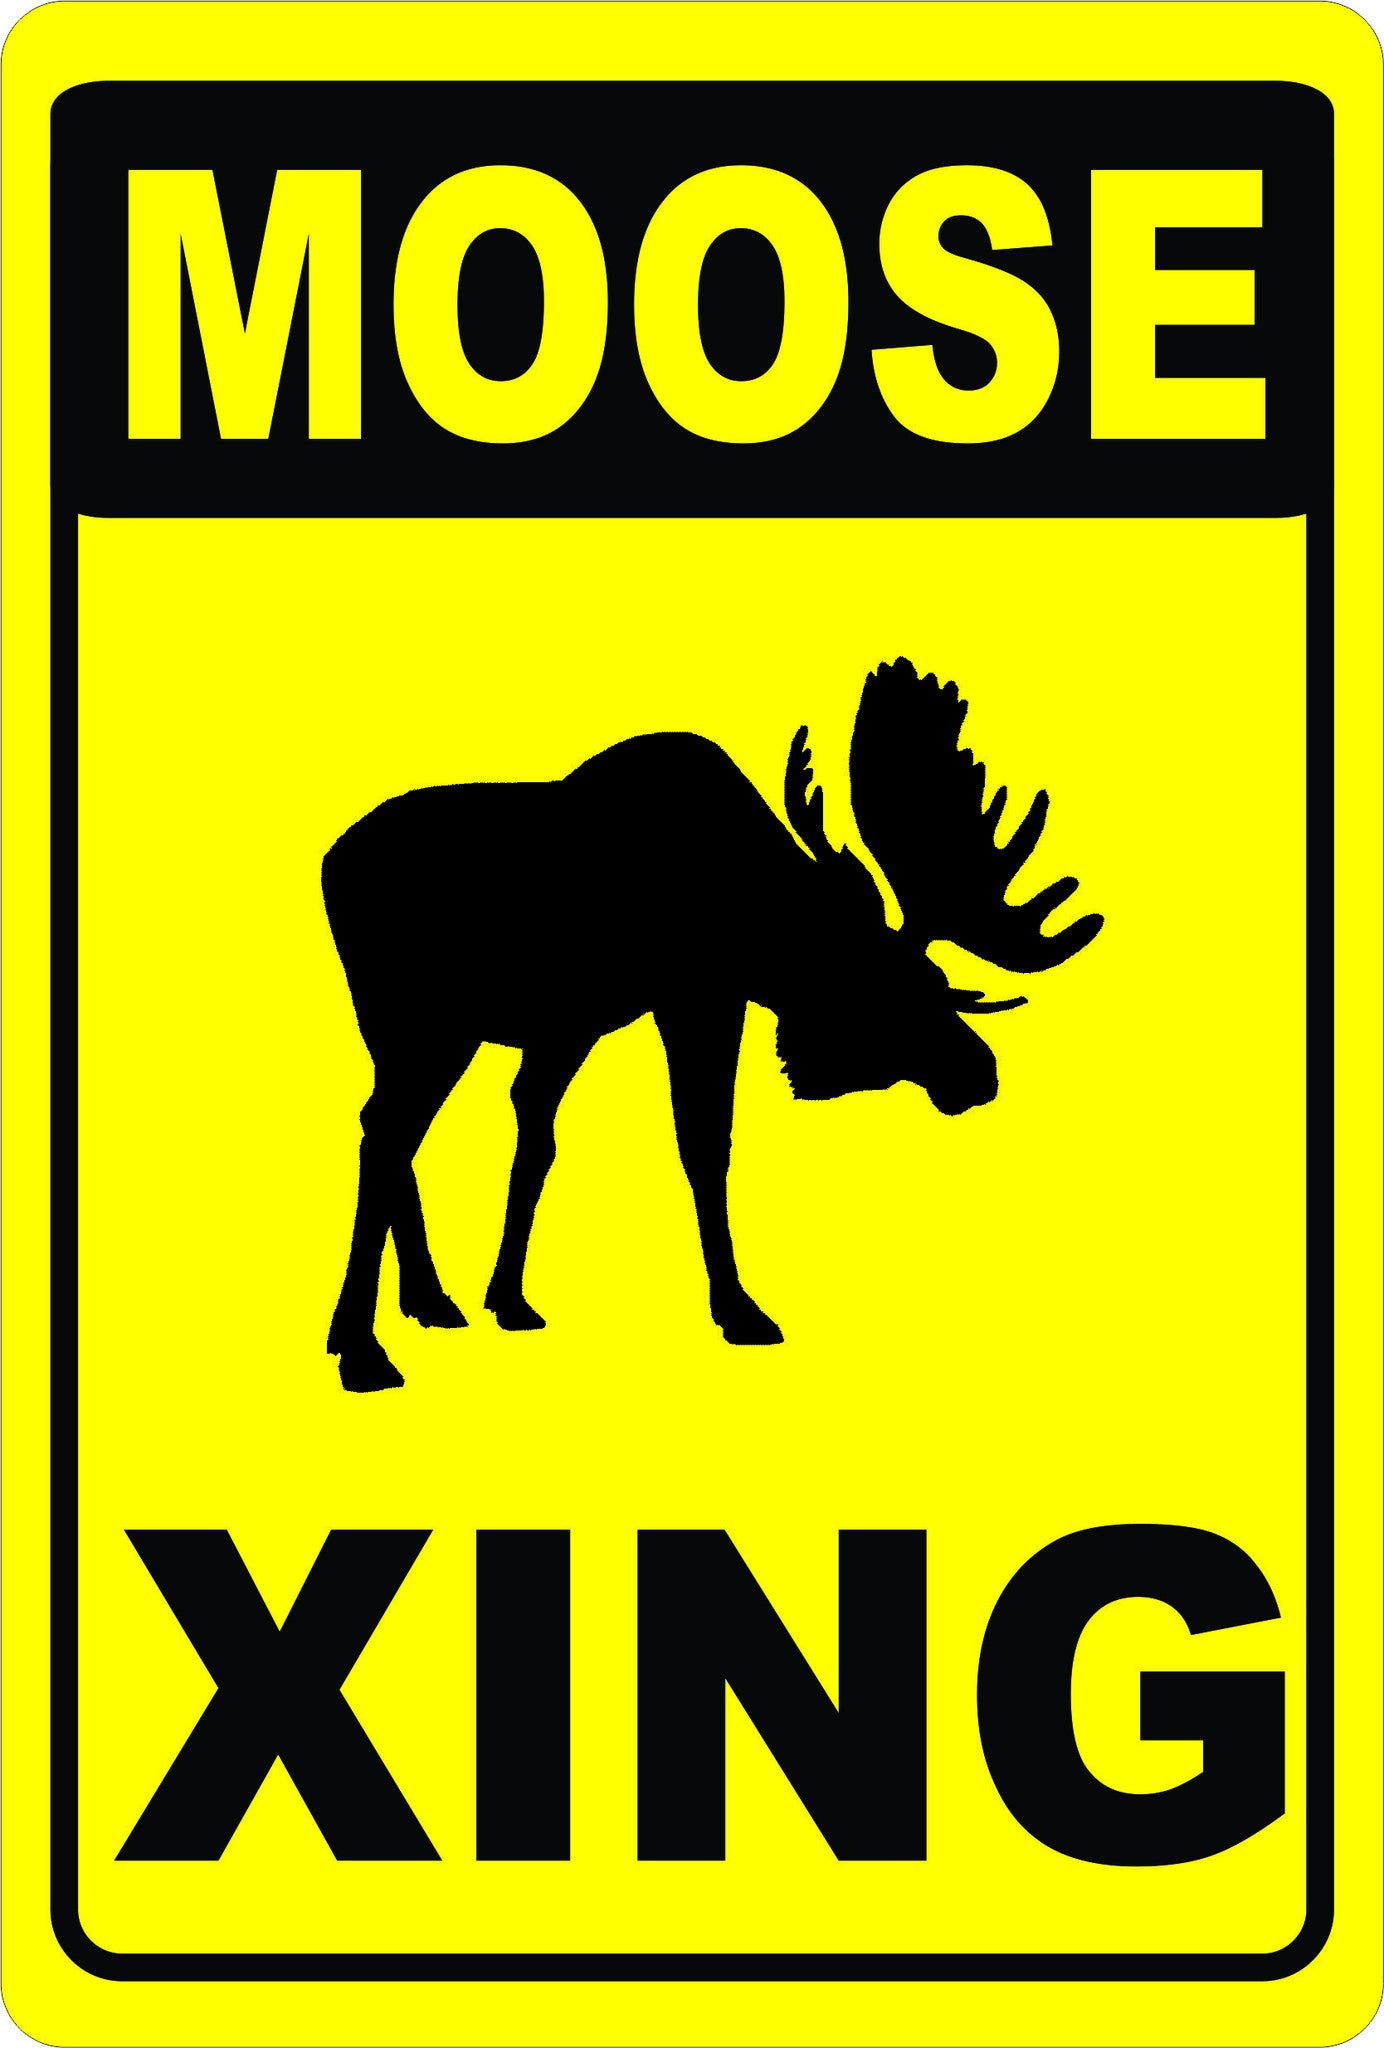 Moose_Xing_Sign_1024x1024@2x.jpg?v=14824